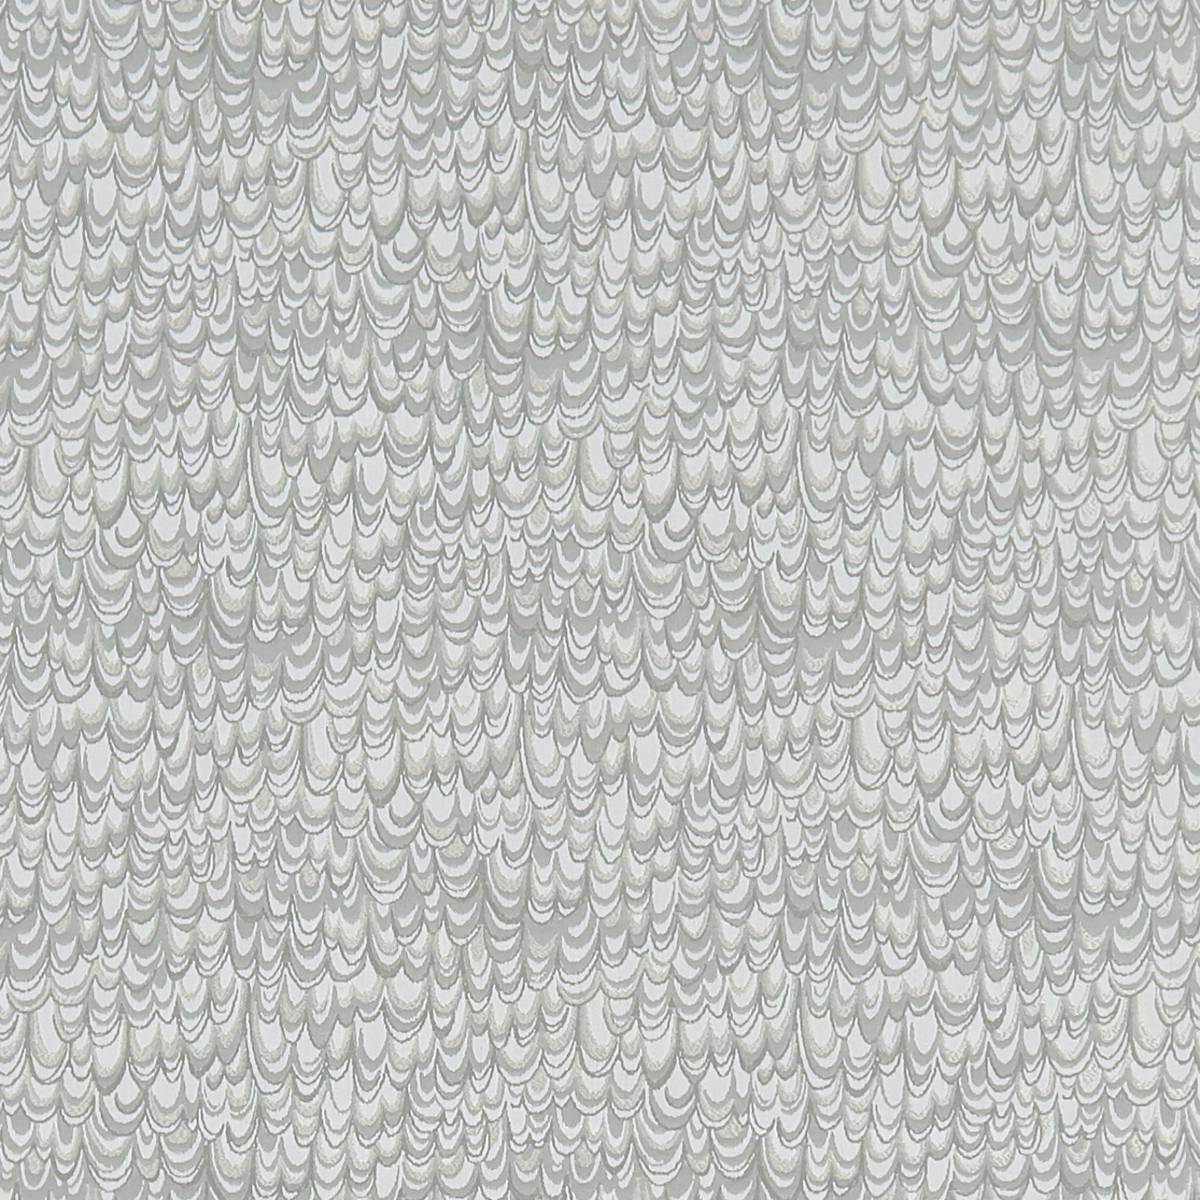 Erebia Silver Fabric by Studio G